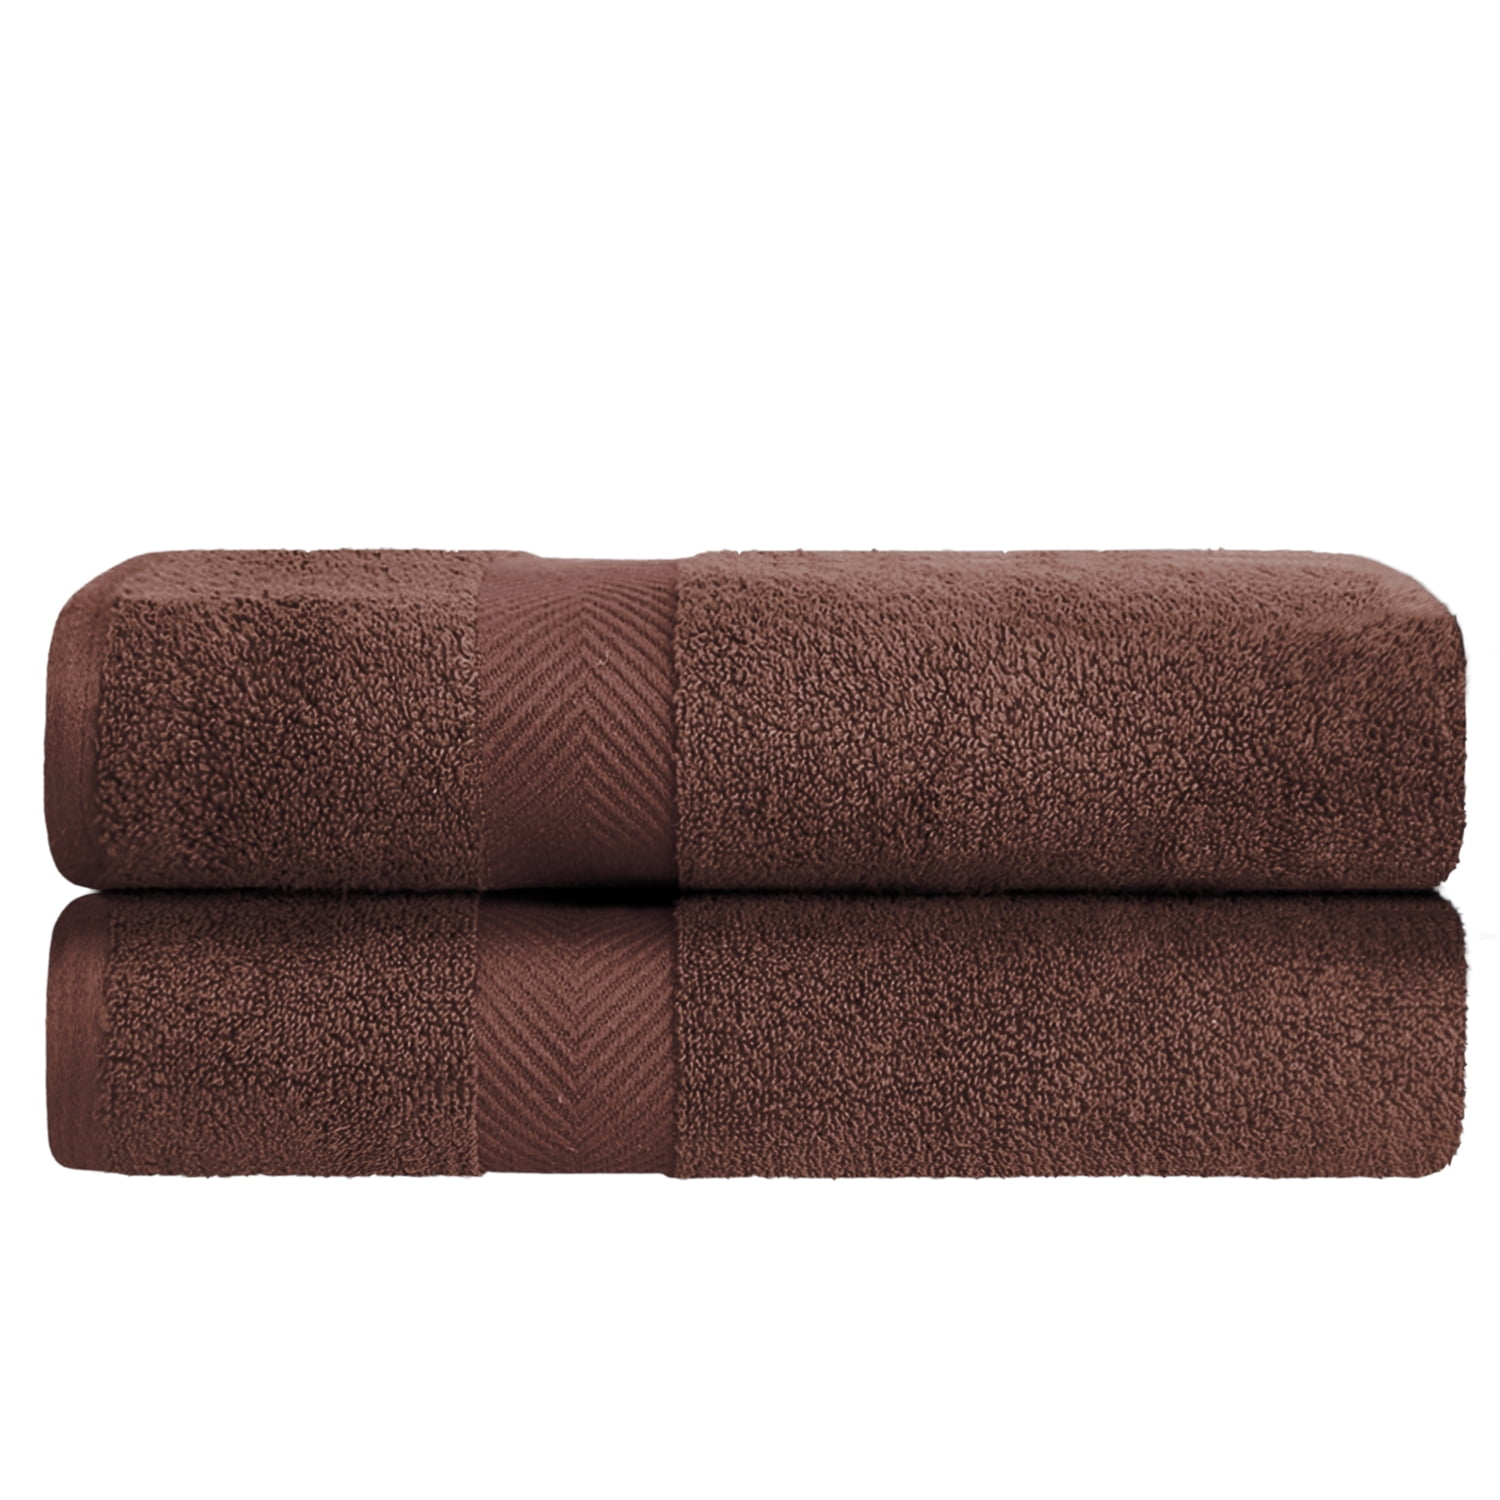 Central Park Studios Grace Textured Zero Twist Set of 4 Bath Towels in Bleached Denim, Size: 4 Pack